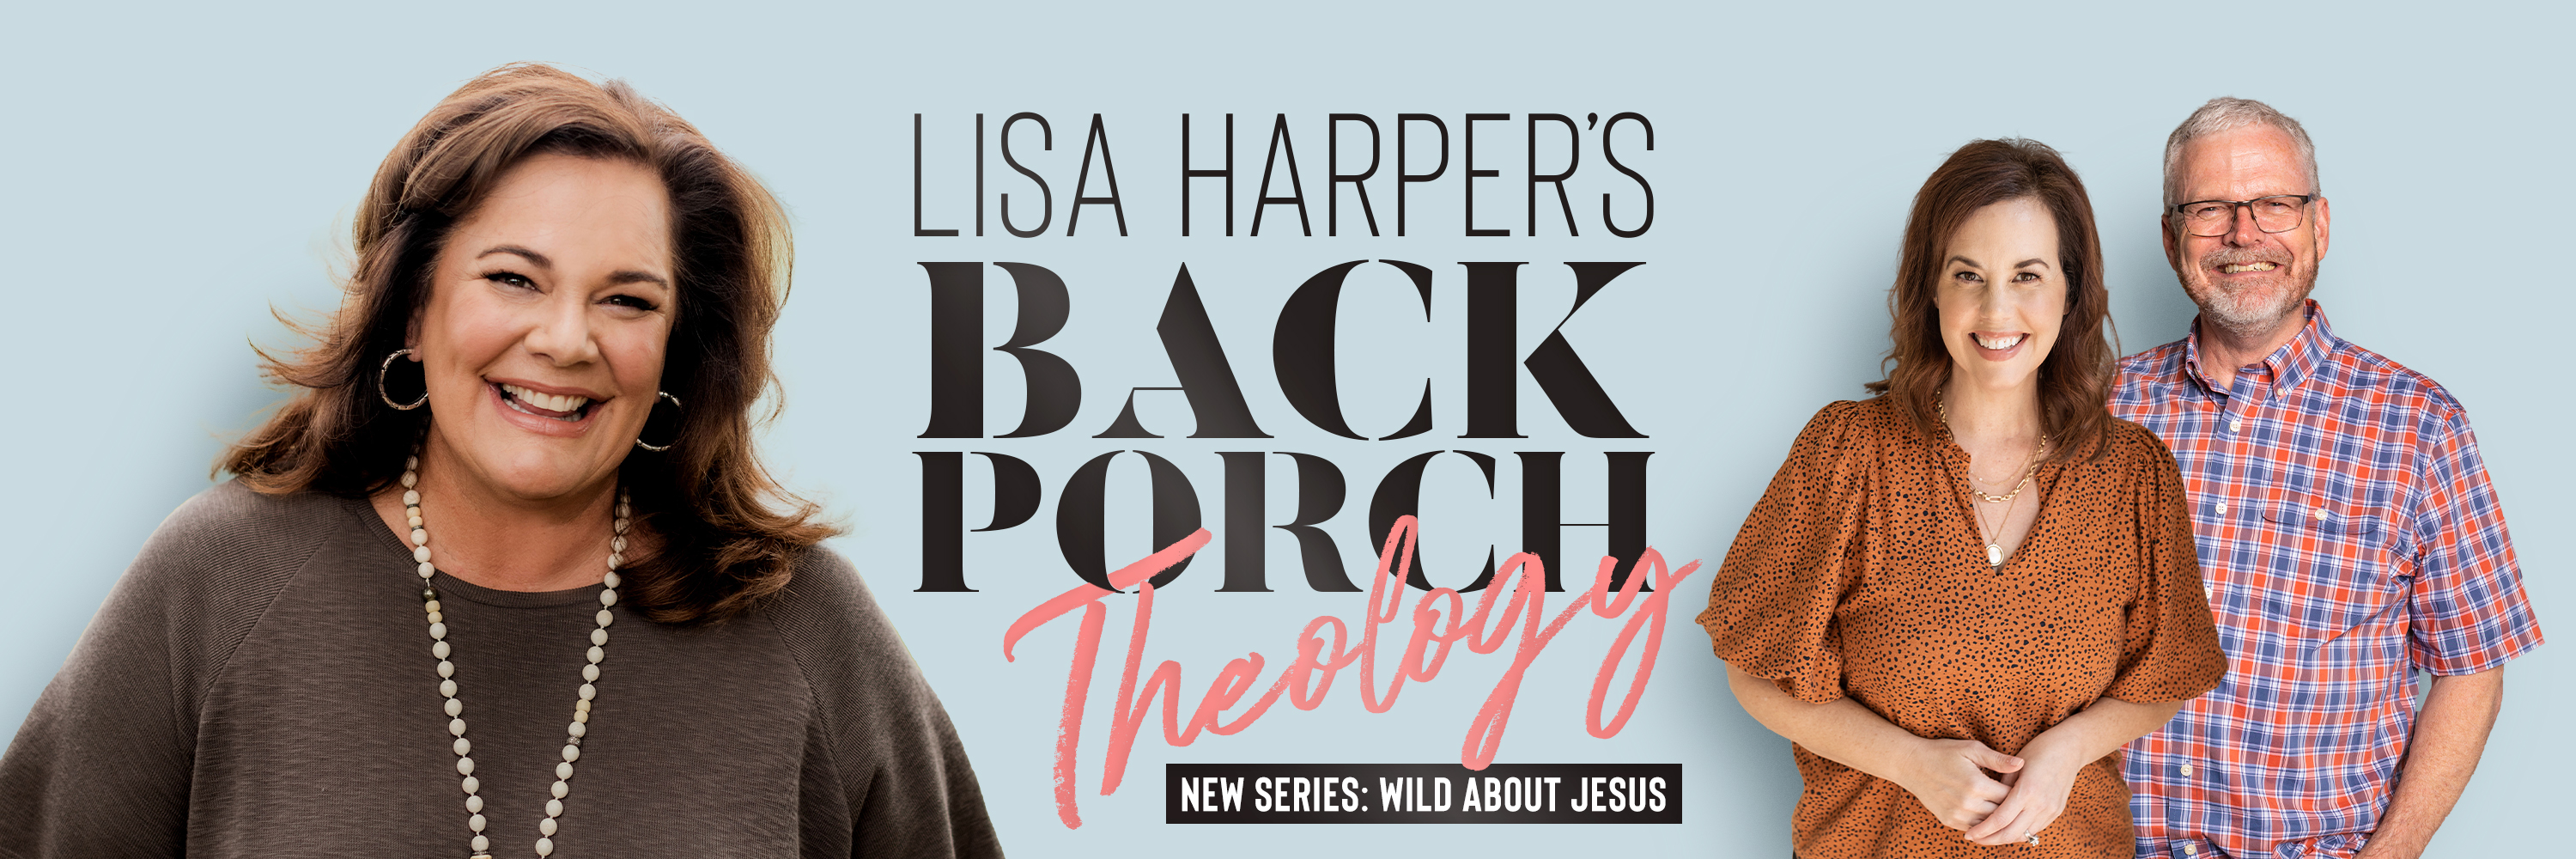 Lisa Harper - Wild About Jesus Series